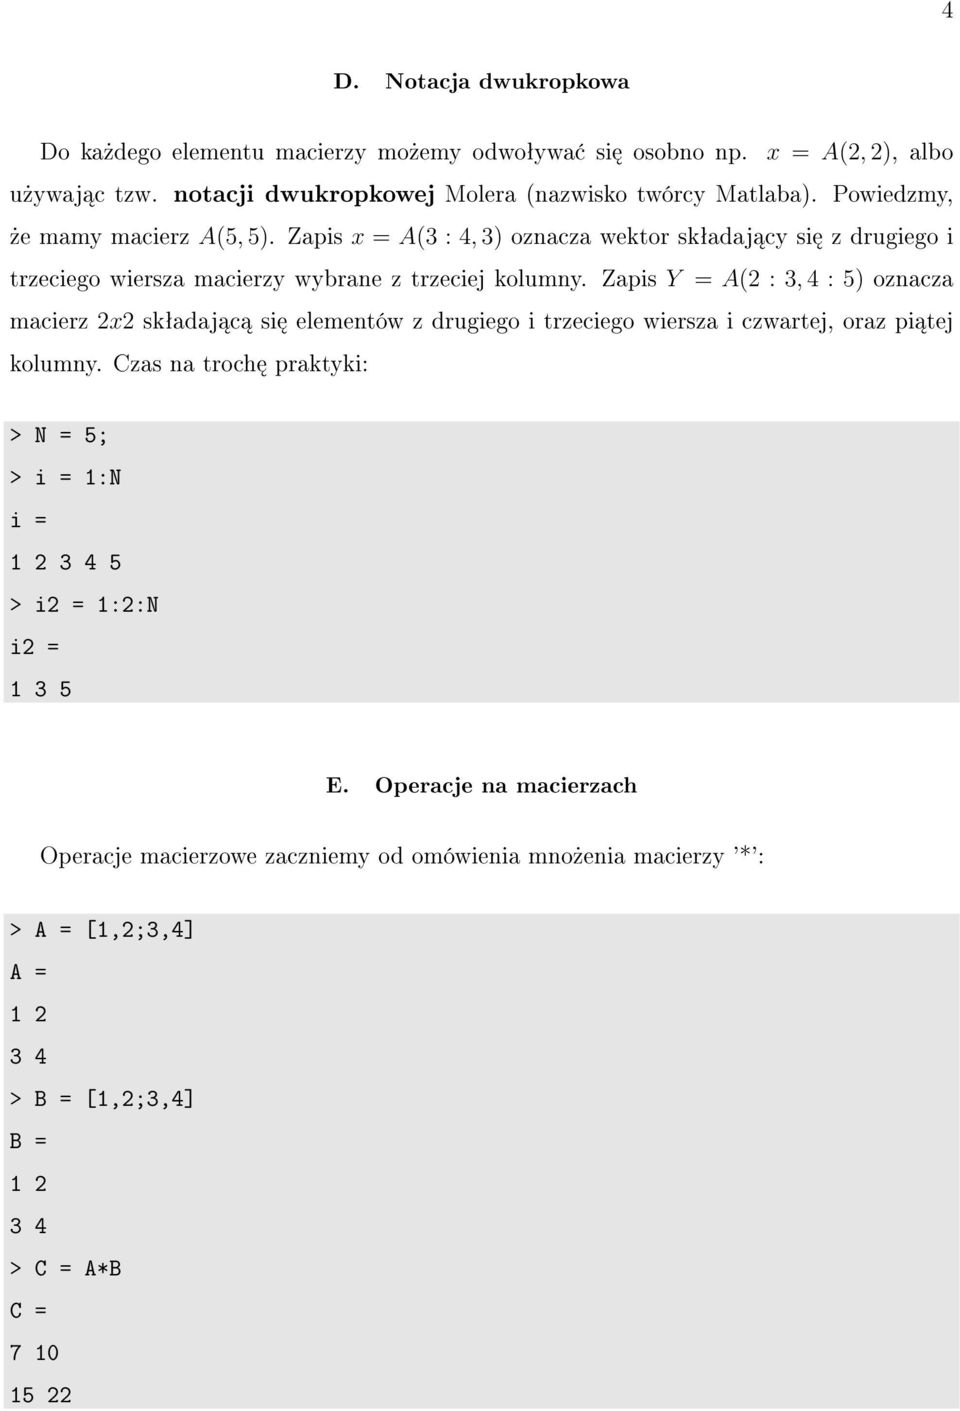 Zapis Y = A(2 : 3, 4 : 5) oznacza macierz 2x2 skªadaj c si elementów z drugiego i trzeciego wiersza i czwartej, oraz pi tej kolumny.